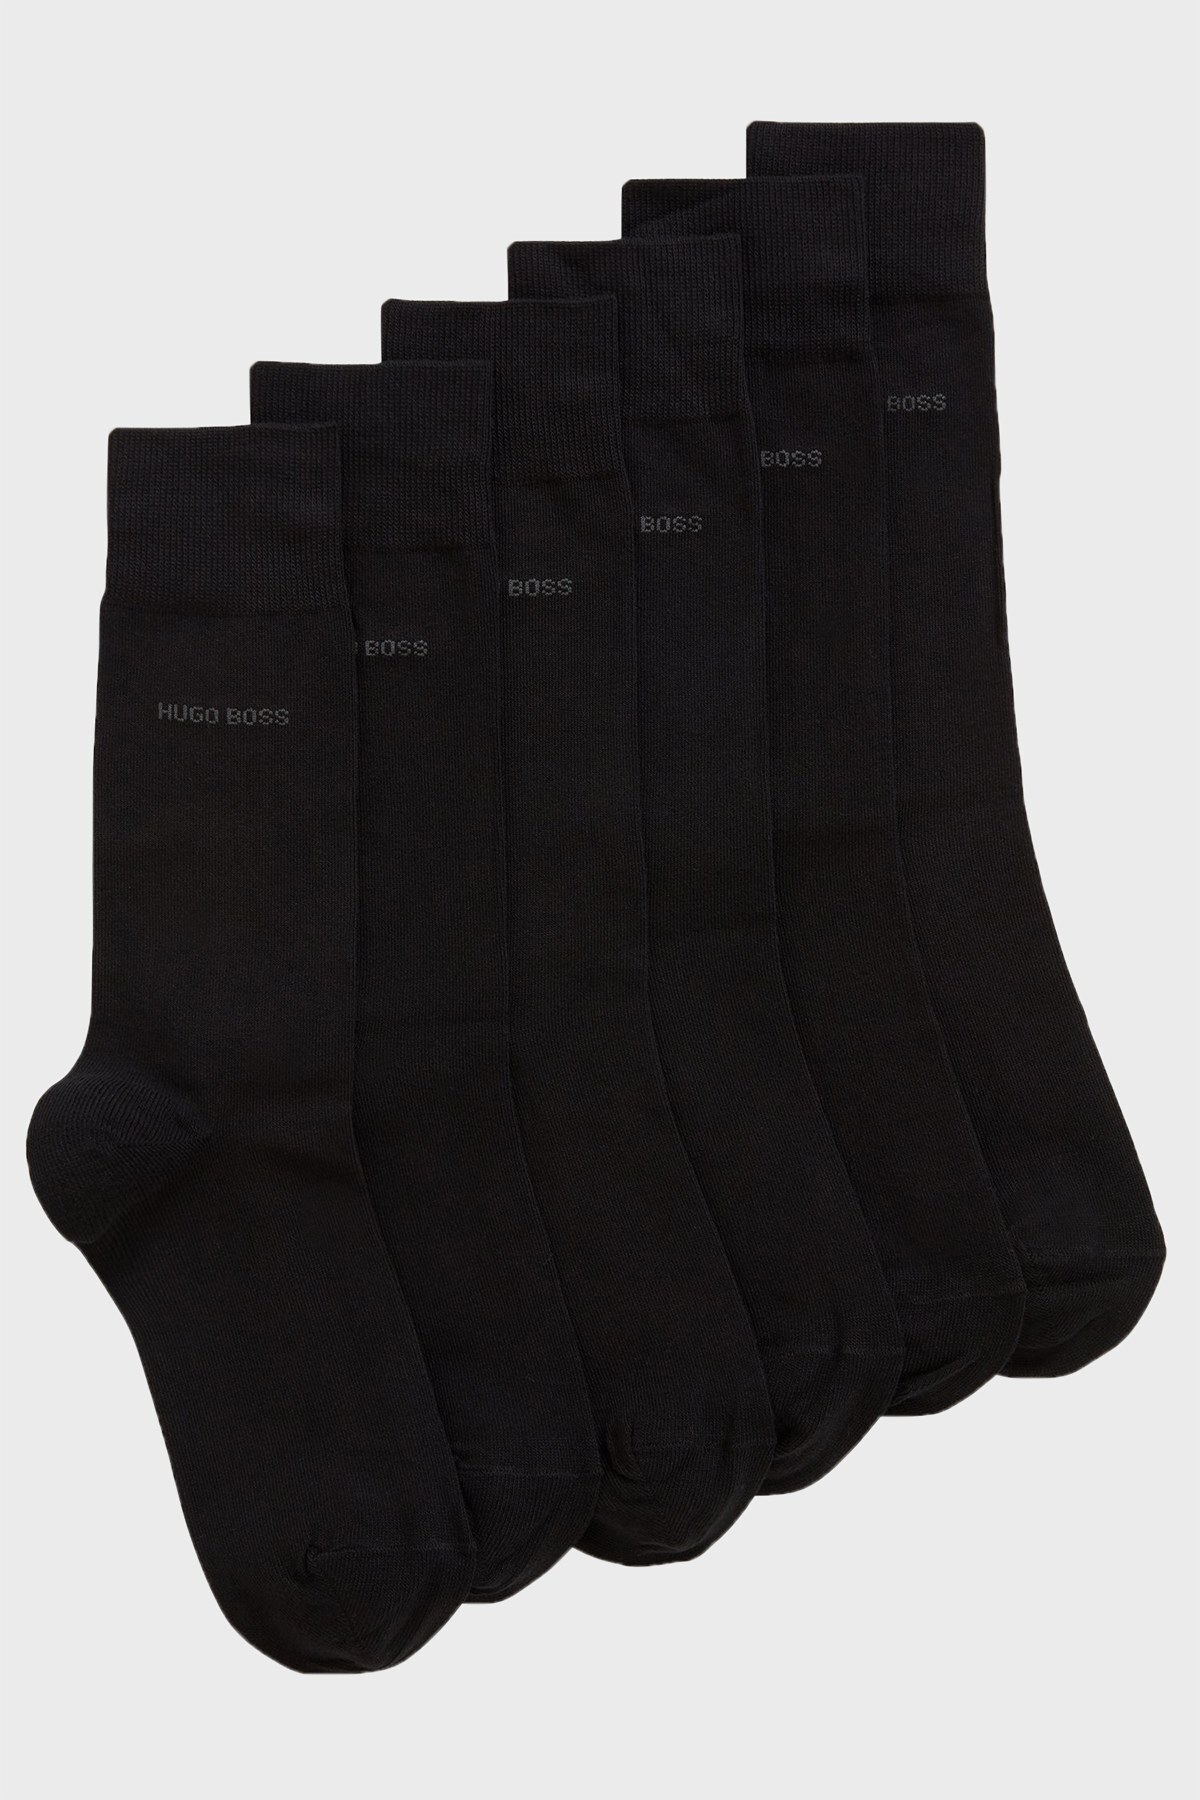 Hugo Boss 3 Pack Erkek Çorap 50388453 001 SİYAH